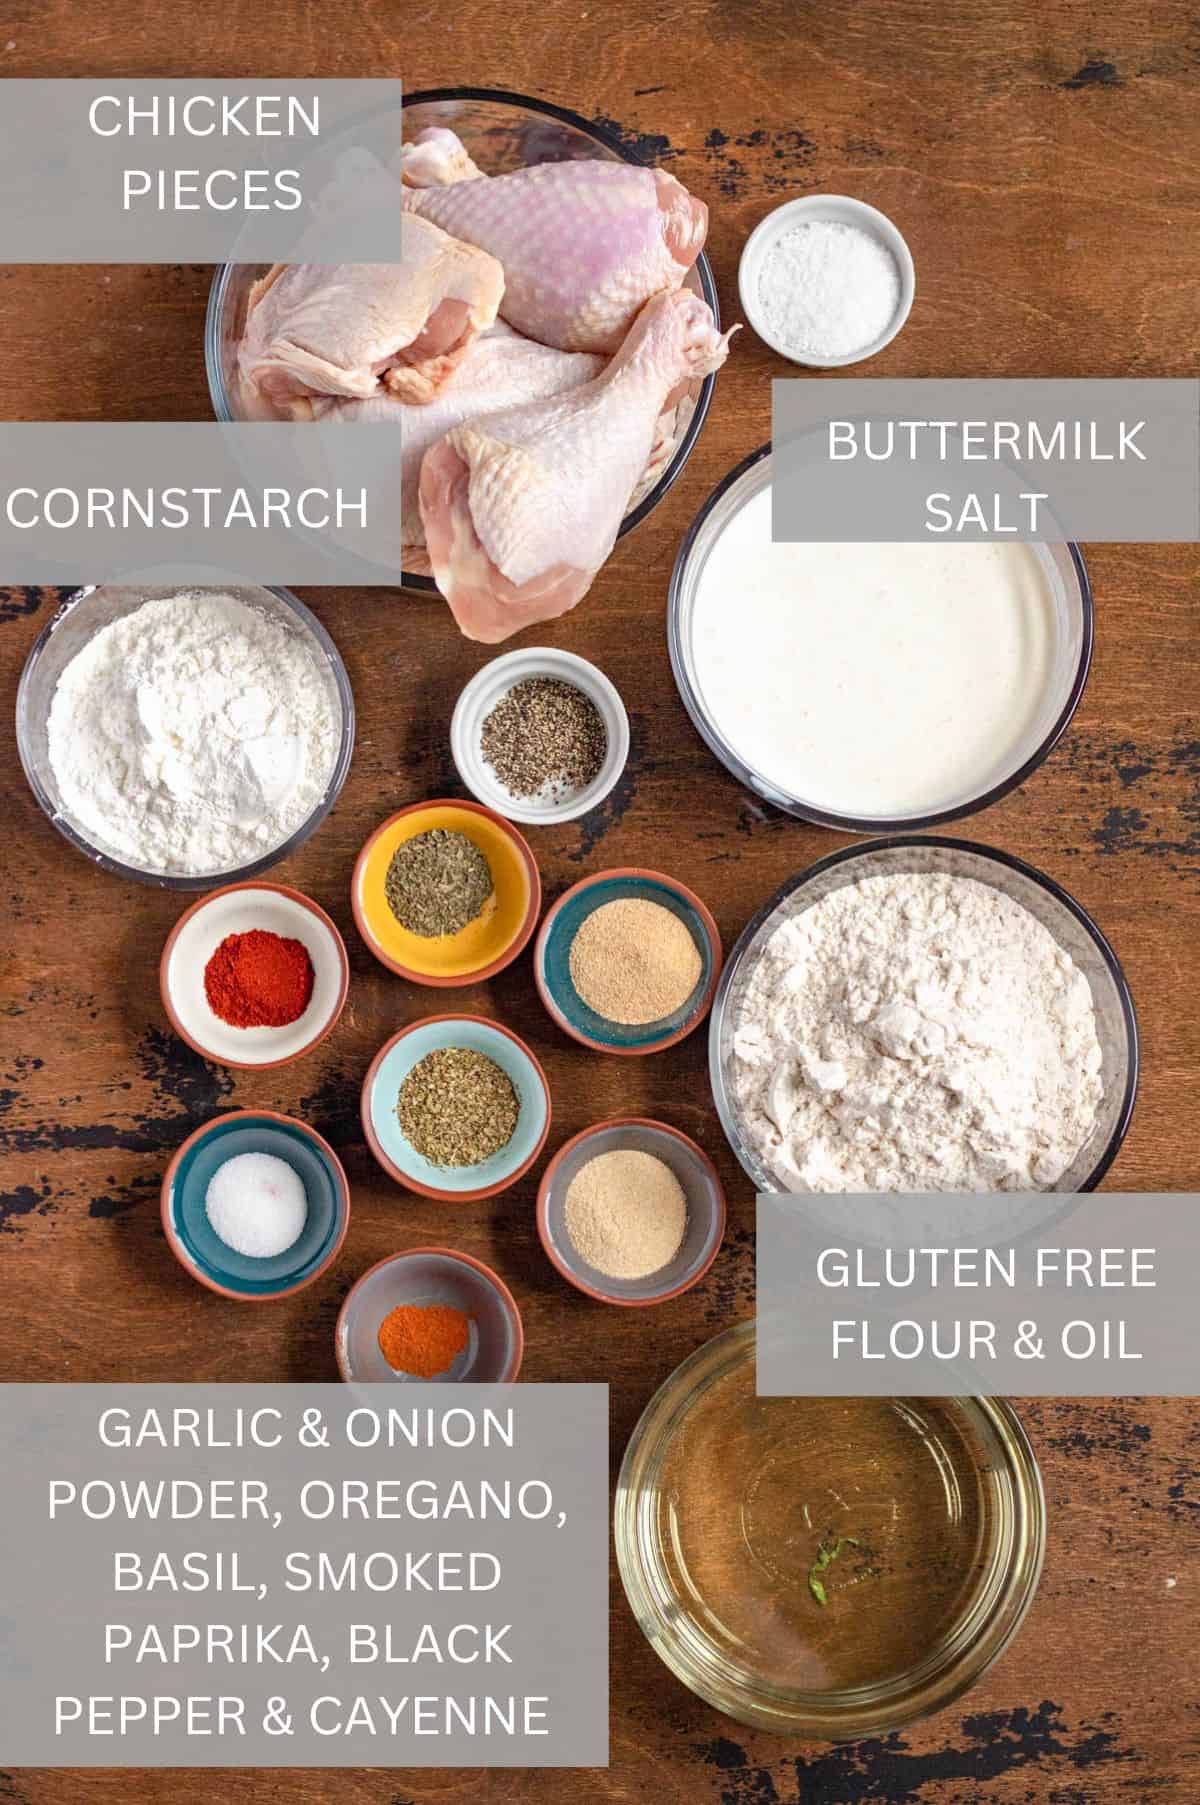 Gluten Free Fried Chicken Recipe ingredients